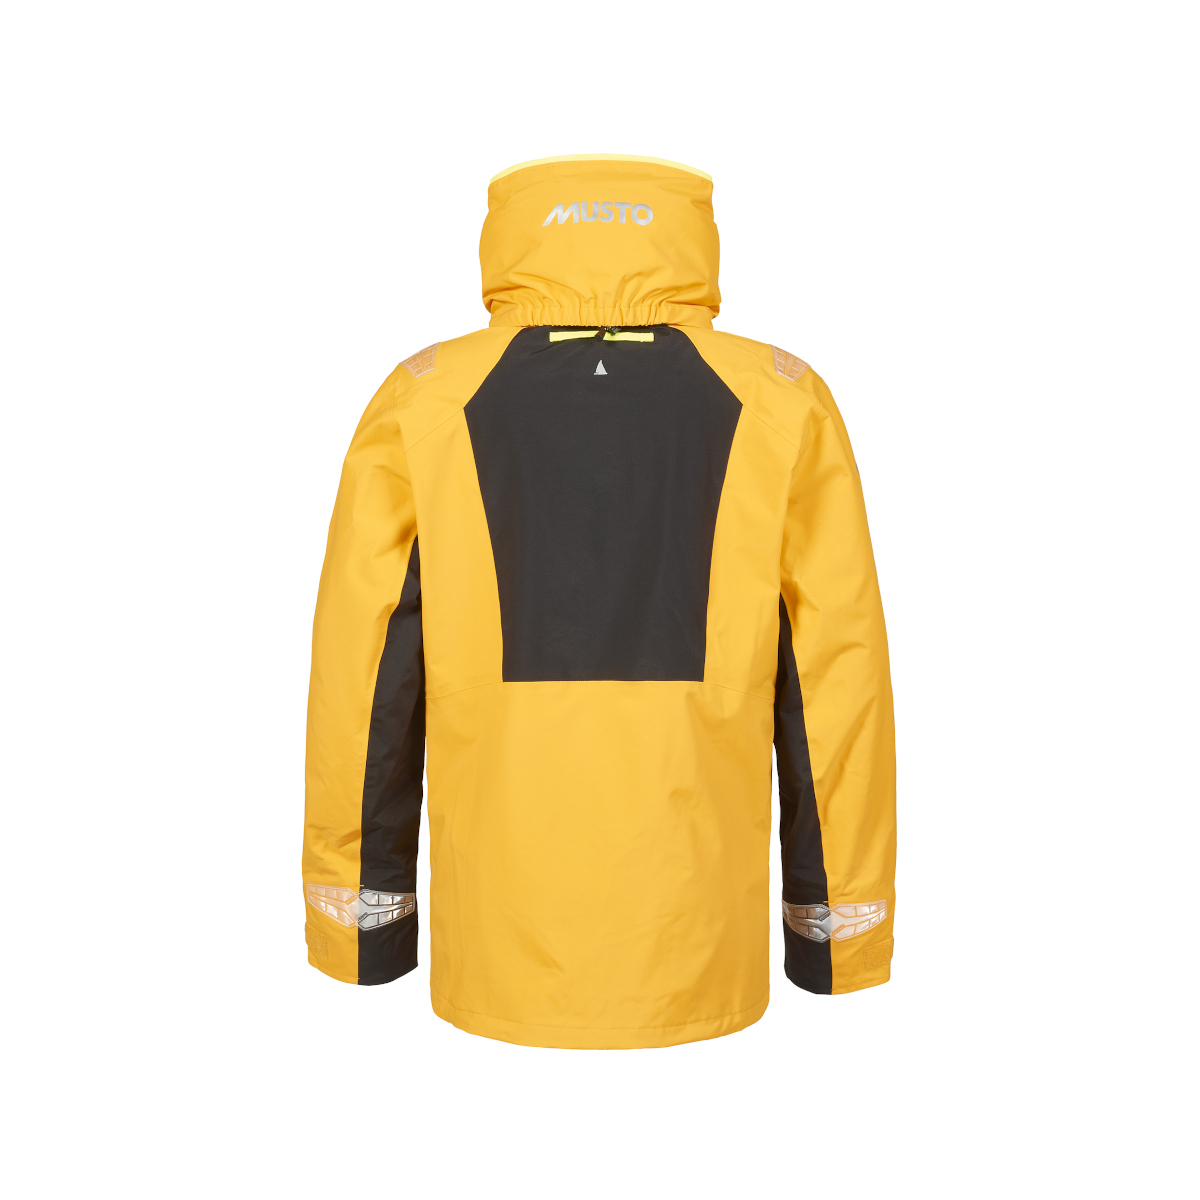 Musto BR2 veste de voile Offshore 2.0 homme jaune, taille XS